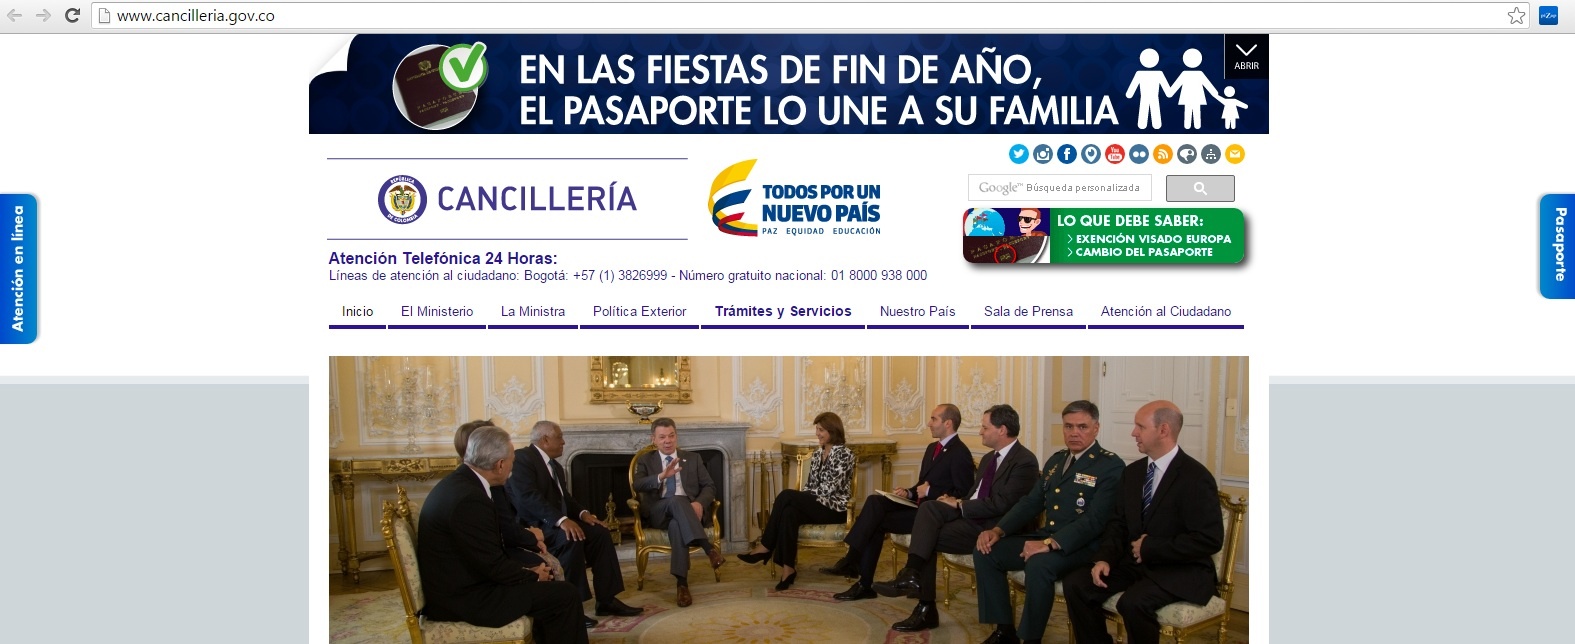 Página web de la Cancillería colombiana